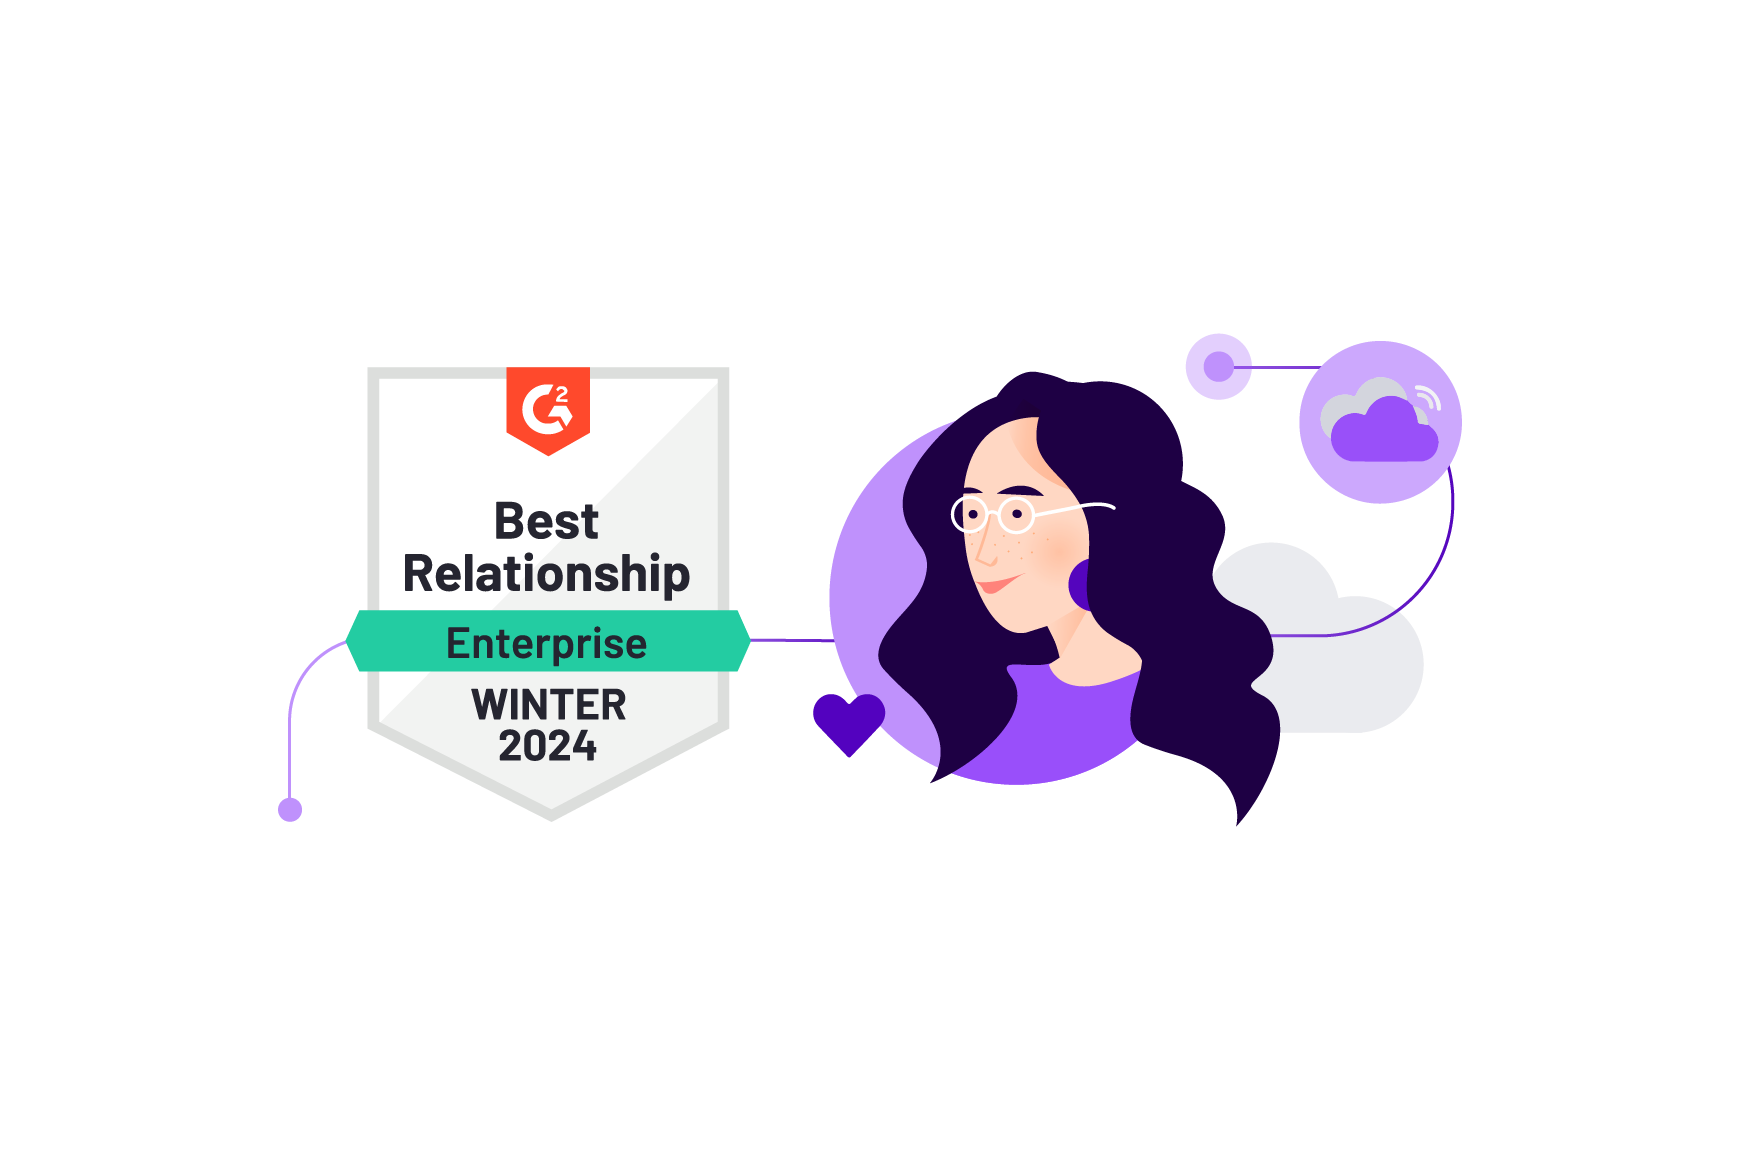 Talkdesk ranks as the leader in G2’s Winter 2024 Enterprise Relationship